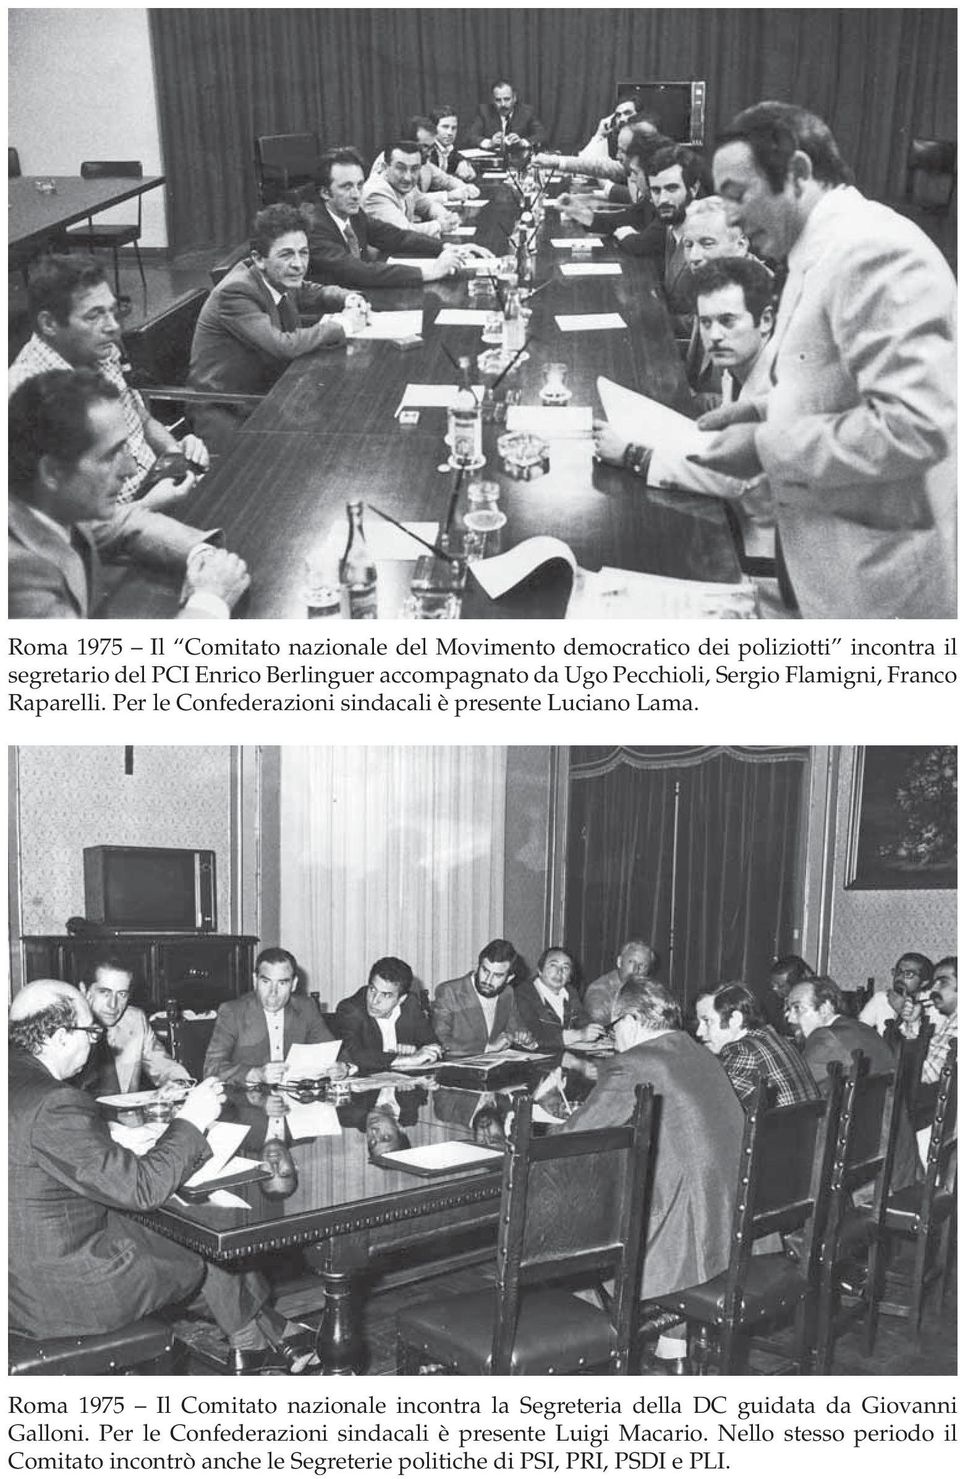 Roma 1975 Il Comitato nazionale incontra la Segreteria della DC guidata da Giovanni Galloni.